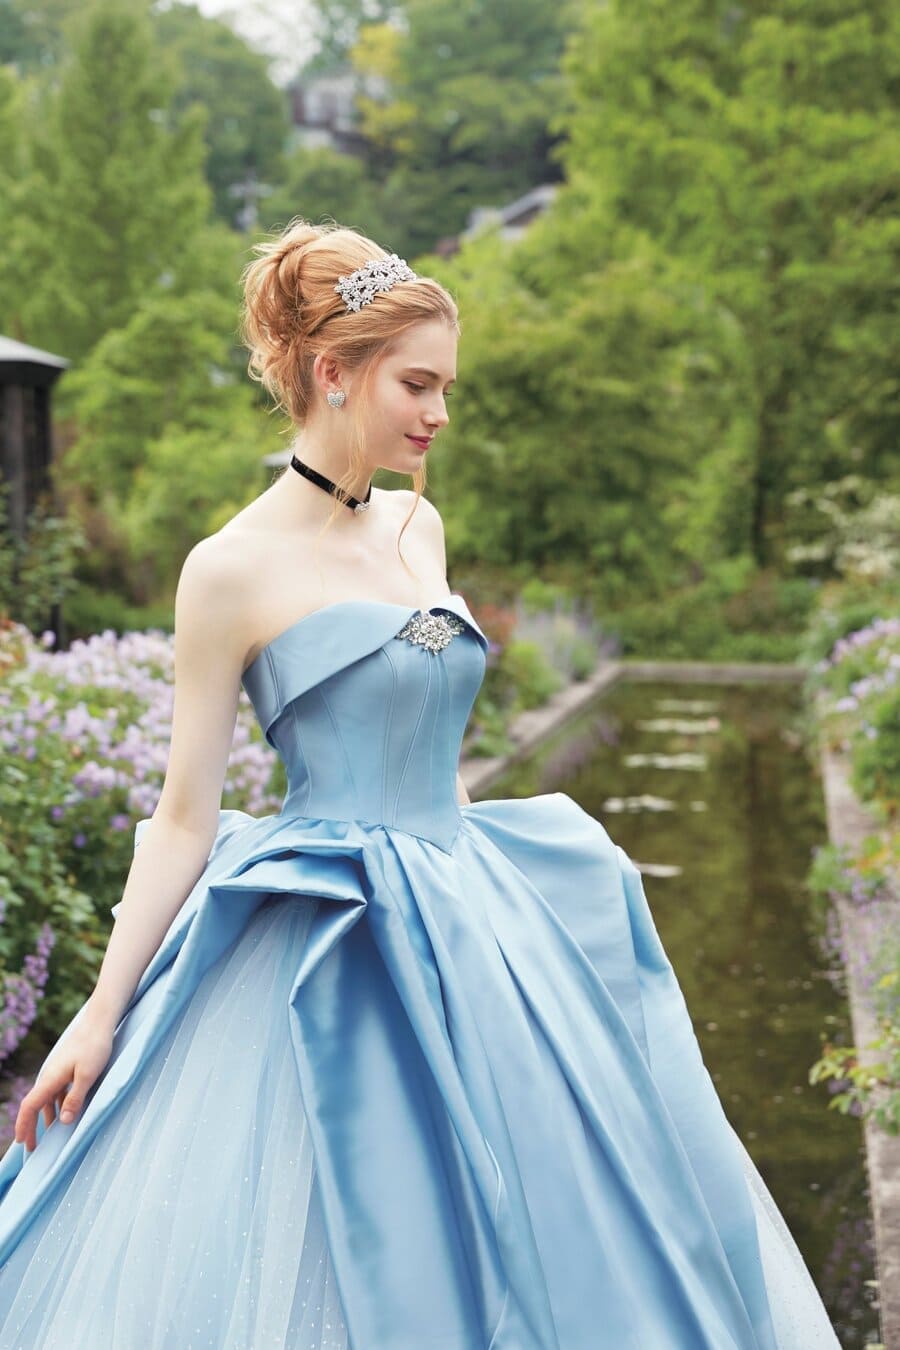 Sẽ ra sao khi dàn công chúa Disney ăn mặc đúng như giai đoạn lịch sử?